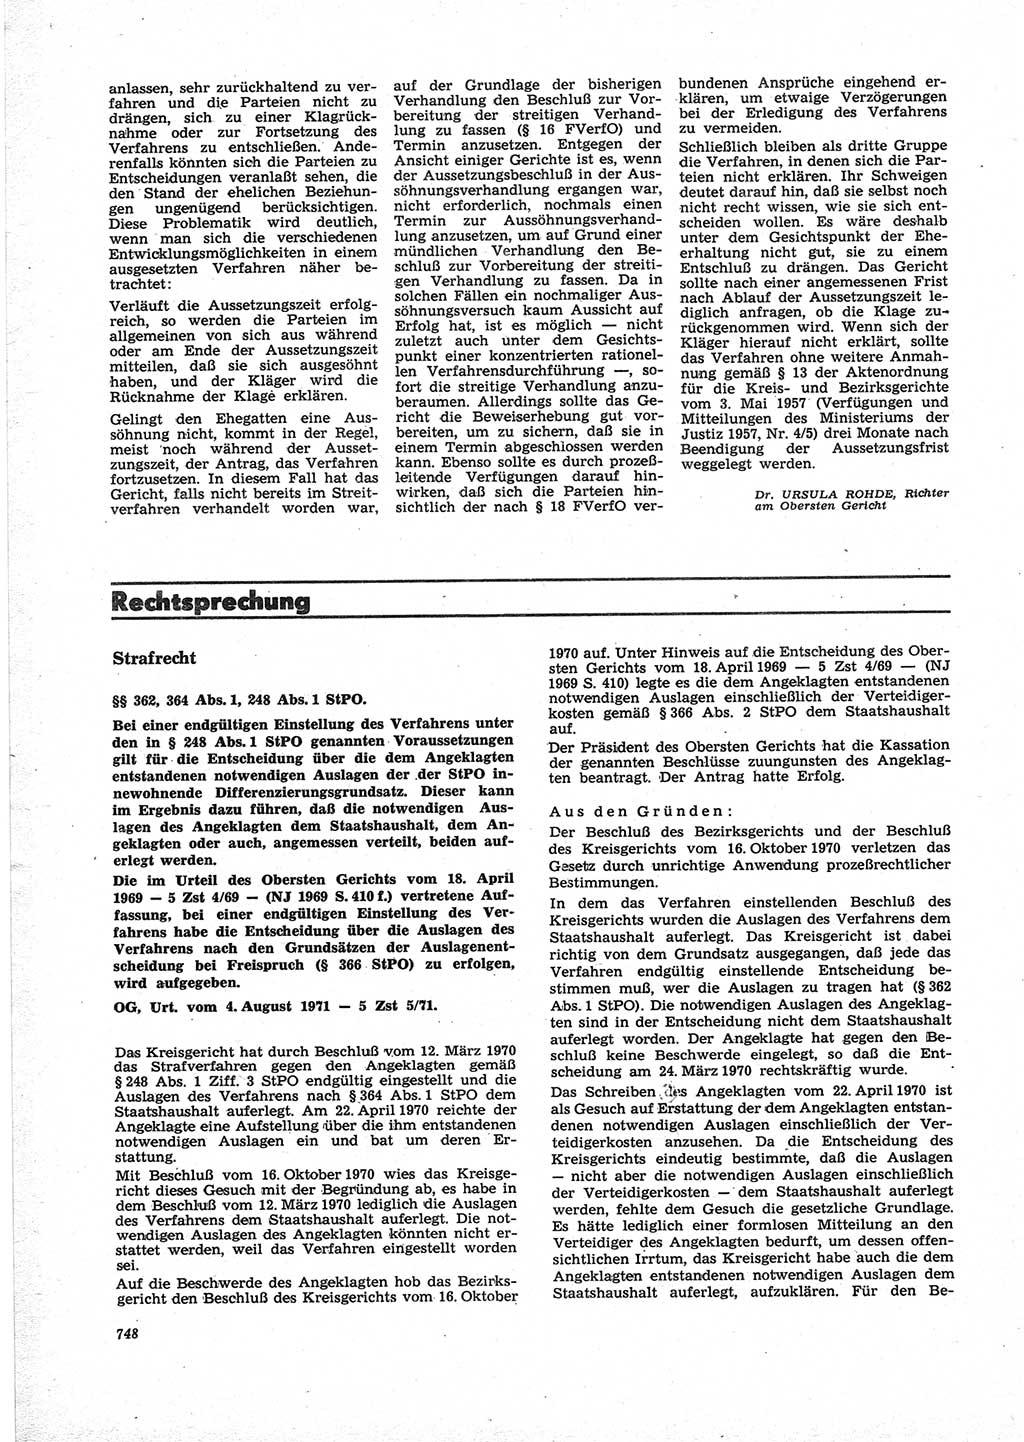 Neue Justiz (NJ), Zeitschrift für Recht und Rechtswissenschaft [Deutsche Demokratische Republik (DDR)], 25. Jahrgang 1971, Seite 748 (NJ DDR 1971, S. 748)